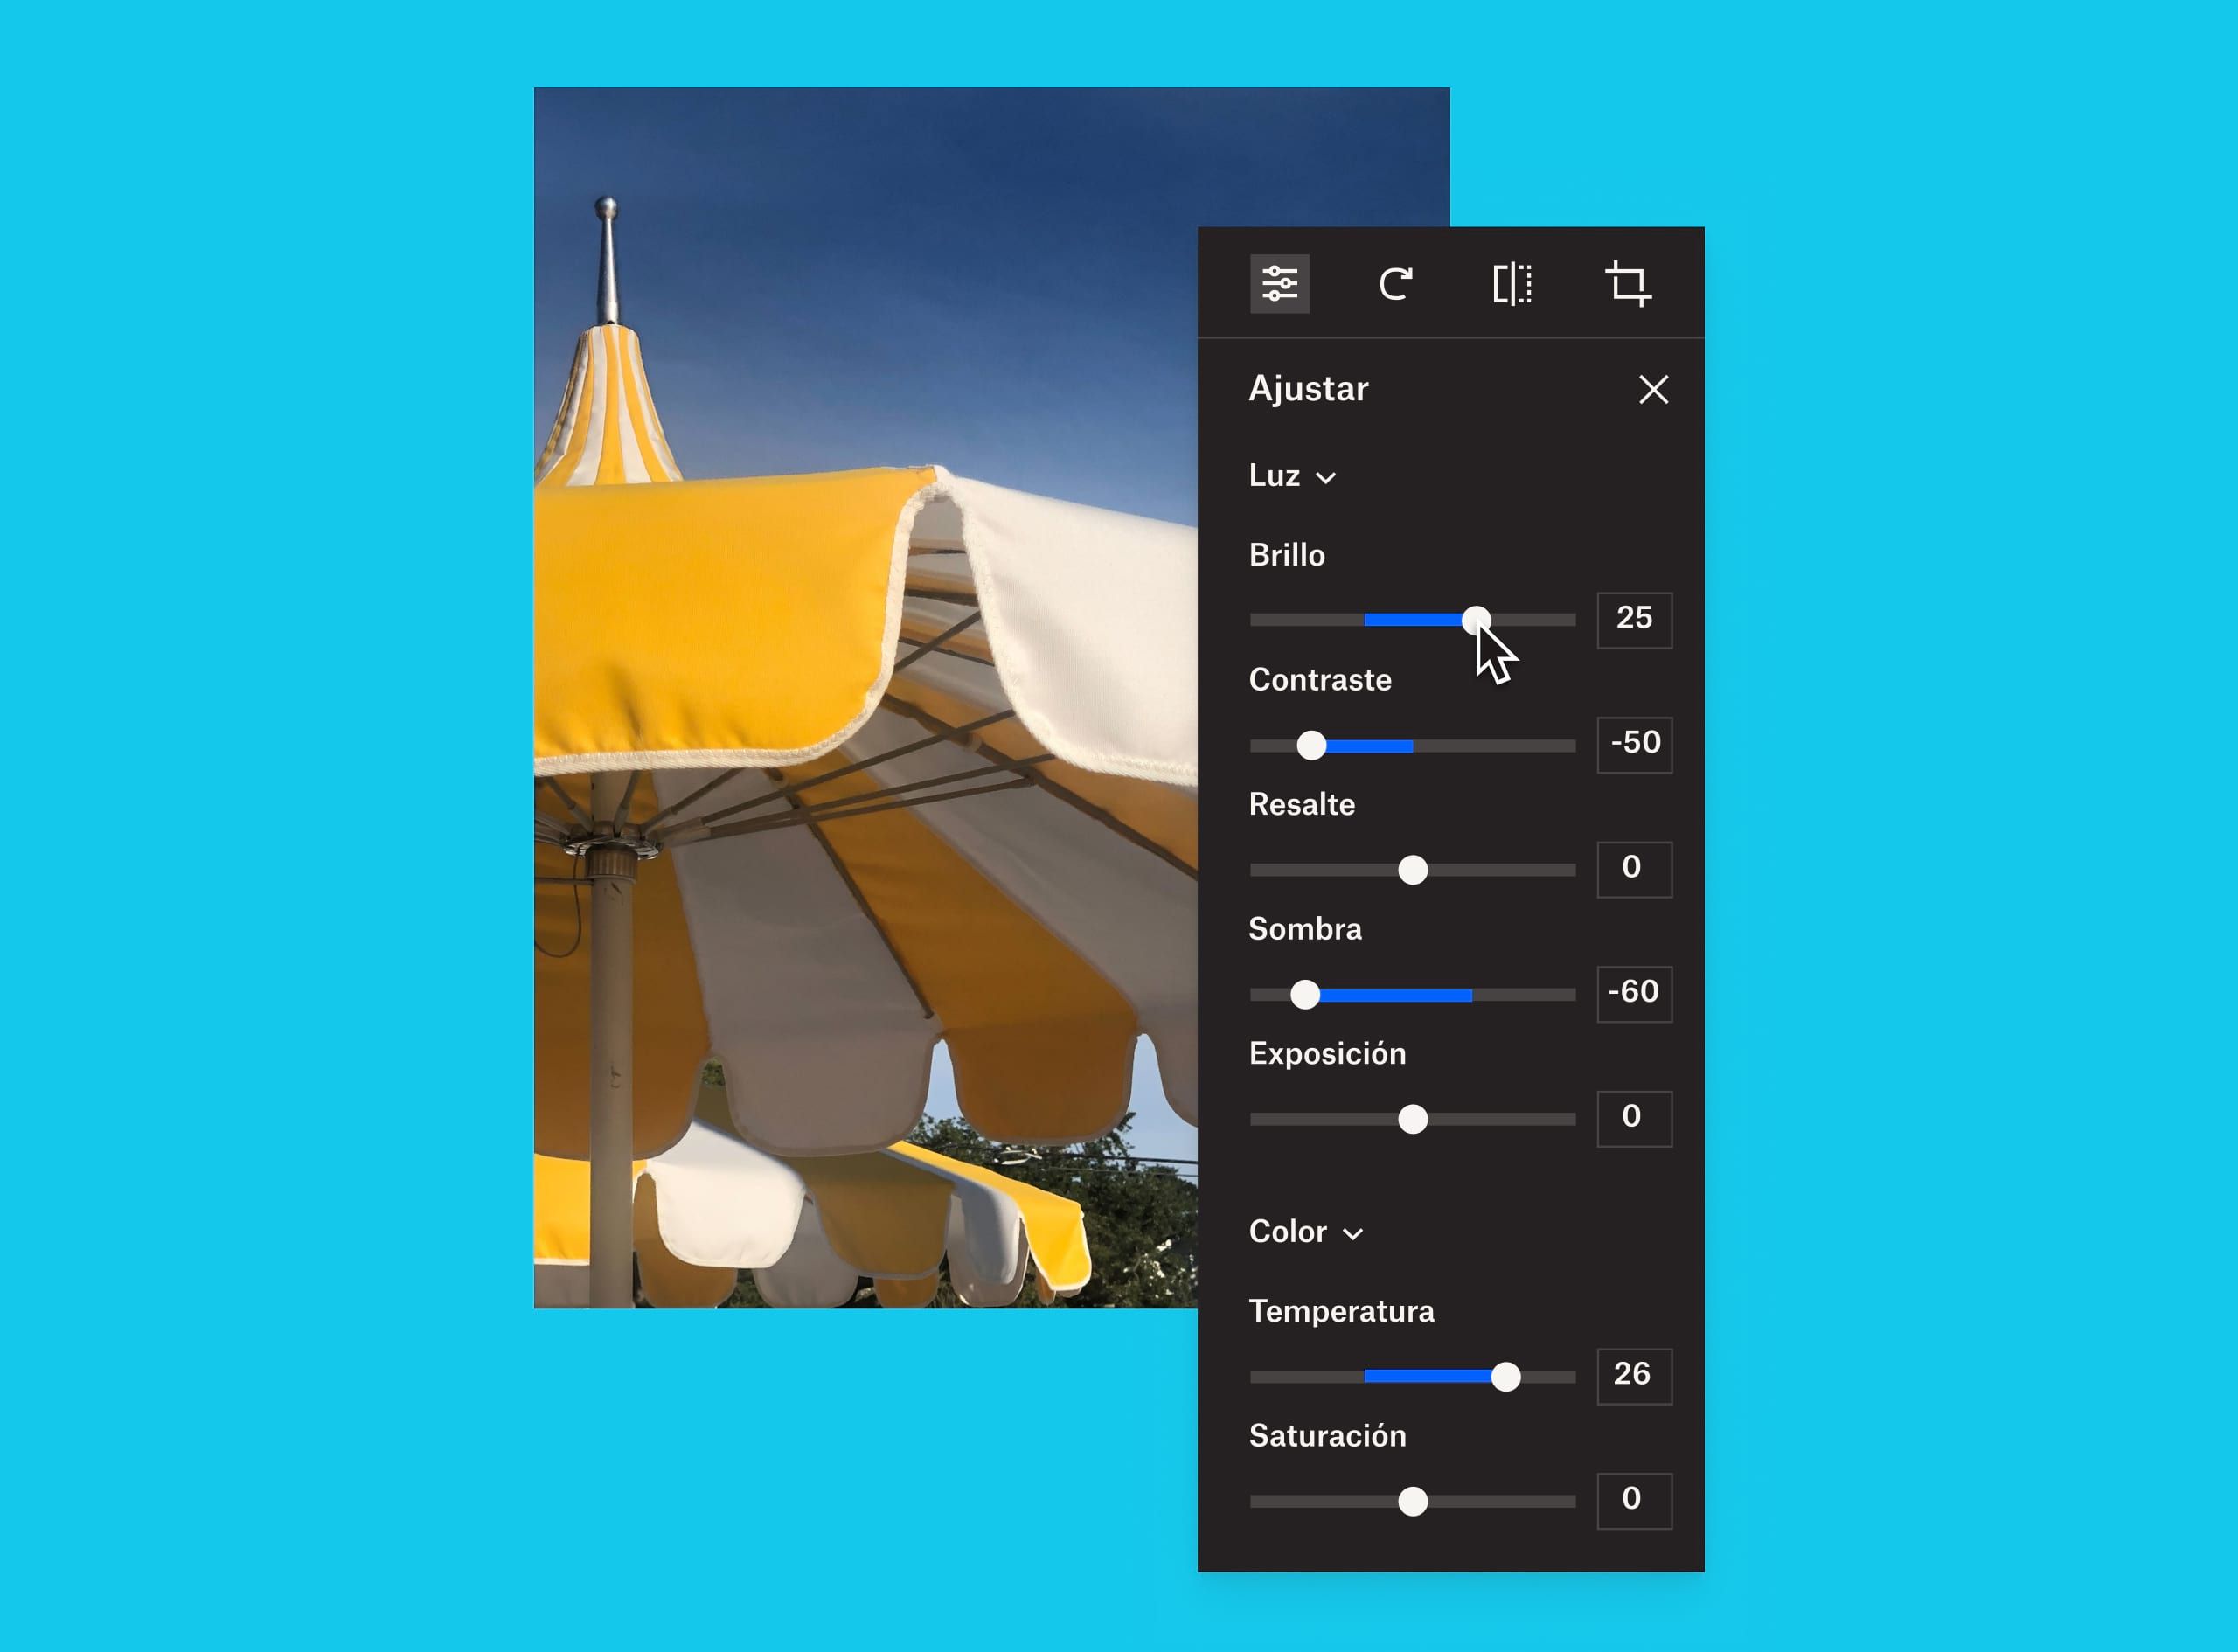 Imagen de un paraguas amarillo y blanco en la que aparece superpuesto un panel de ajuste de la imagen en el cual un usuario está modificando el brillo